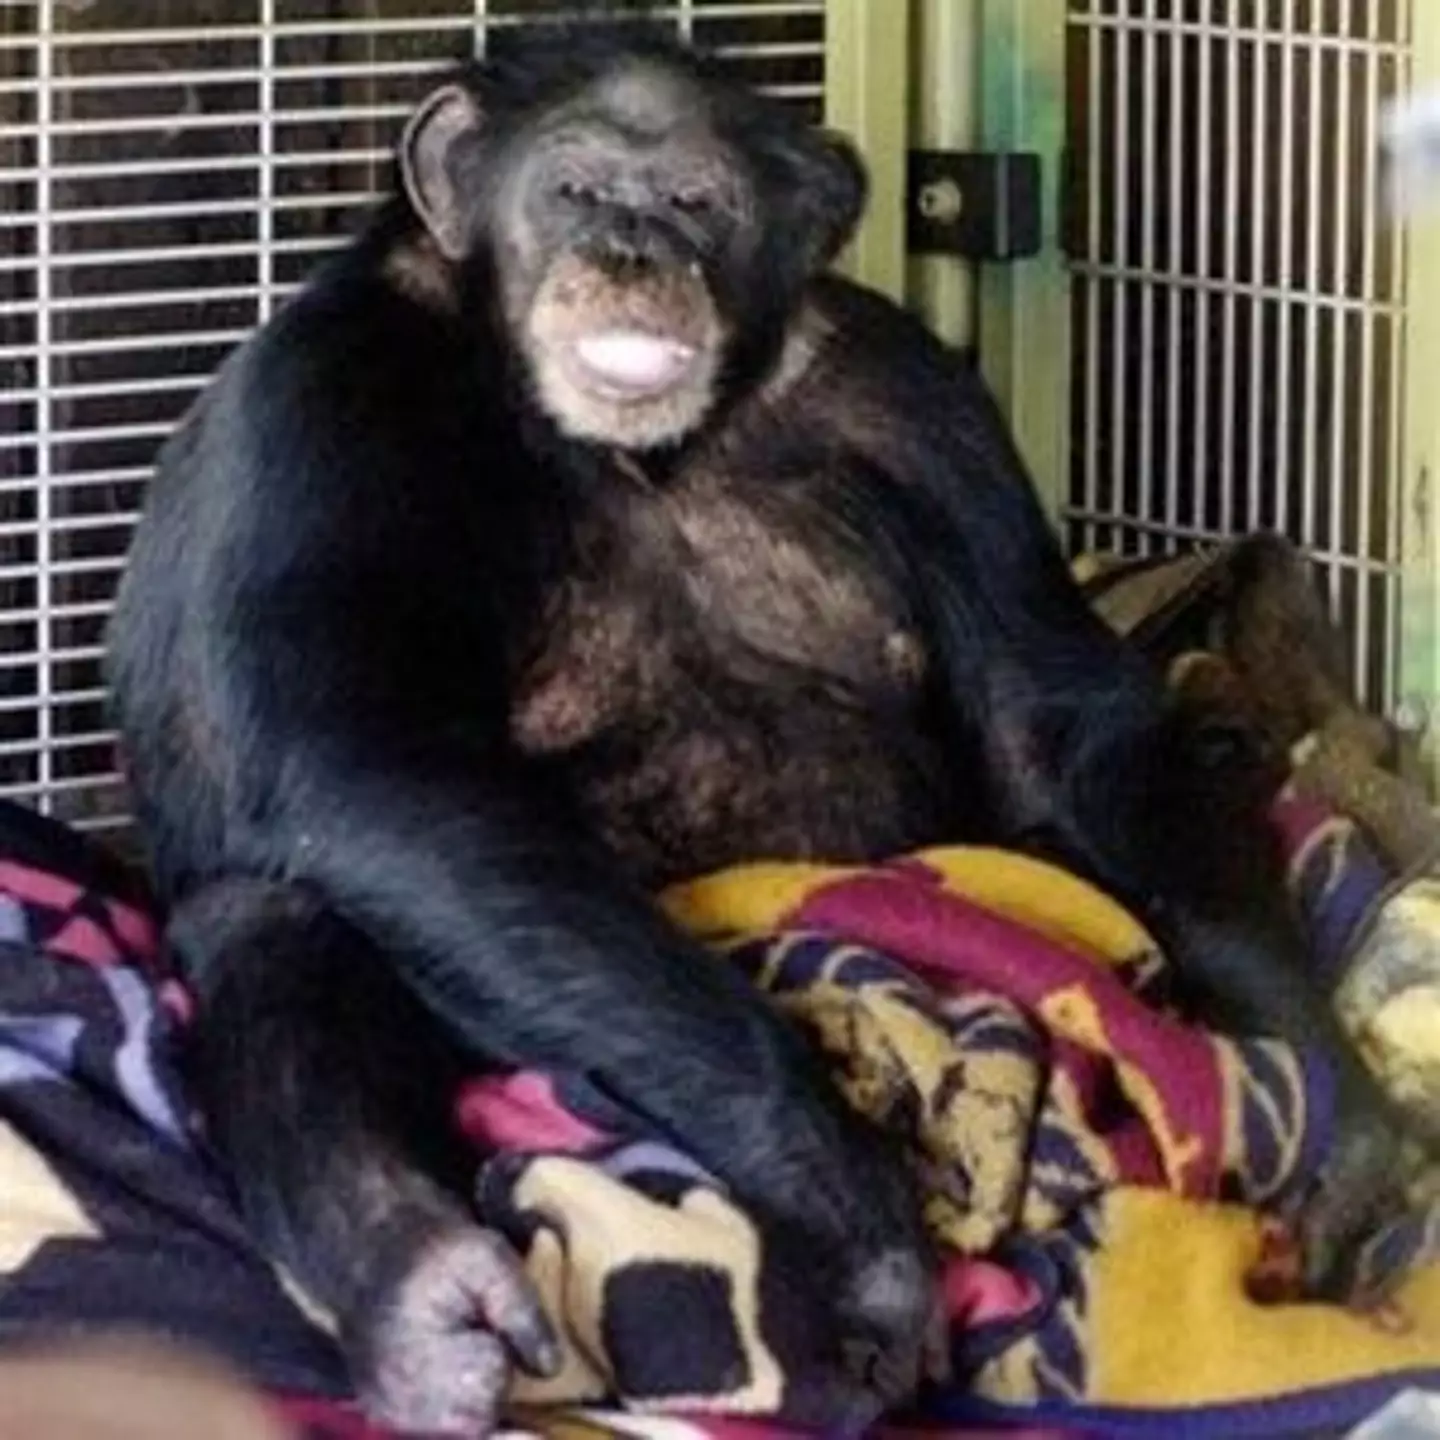 Travis was a 200lb chimpanzee. (AP Photo/The Stamford Advocate, Kathleen O’Rourke)